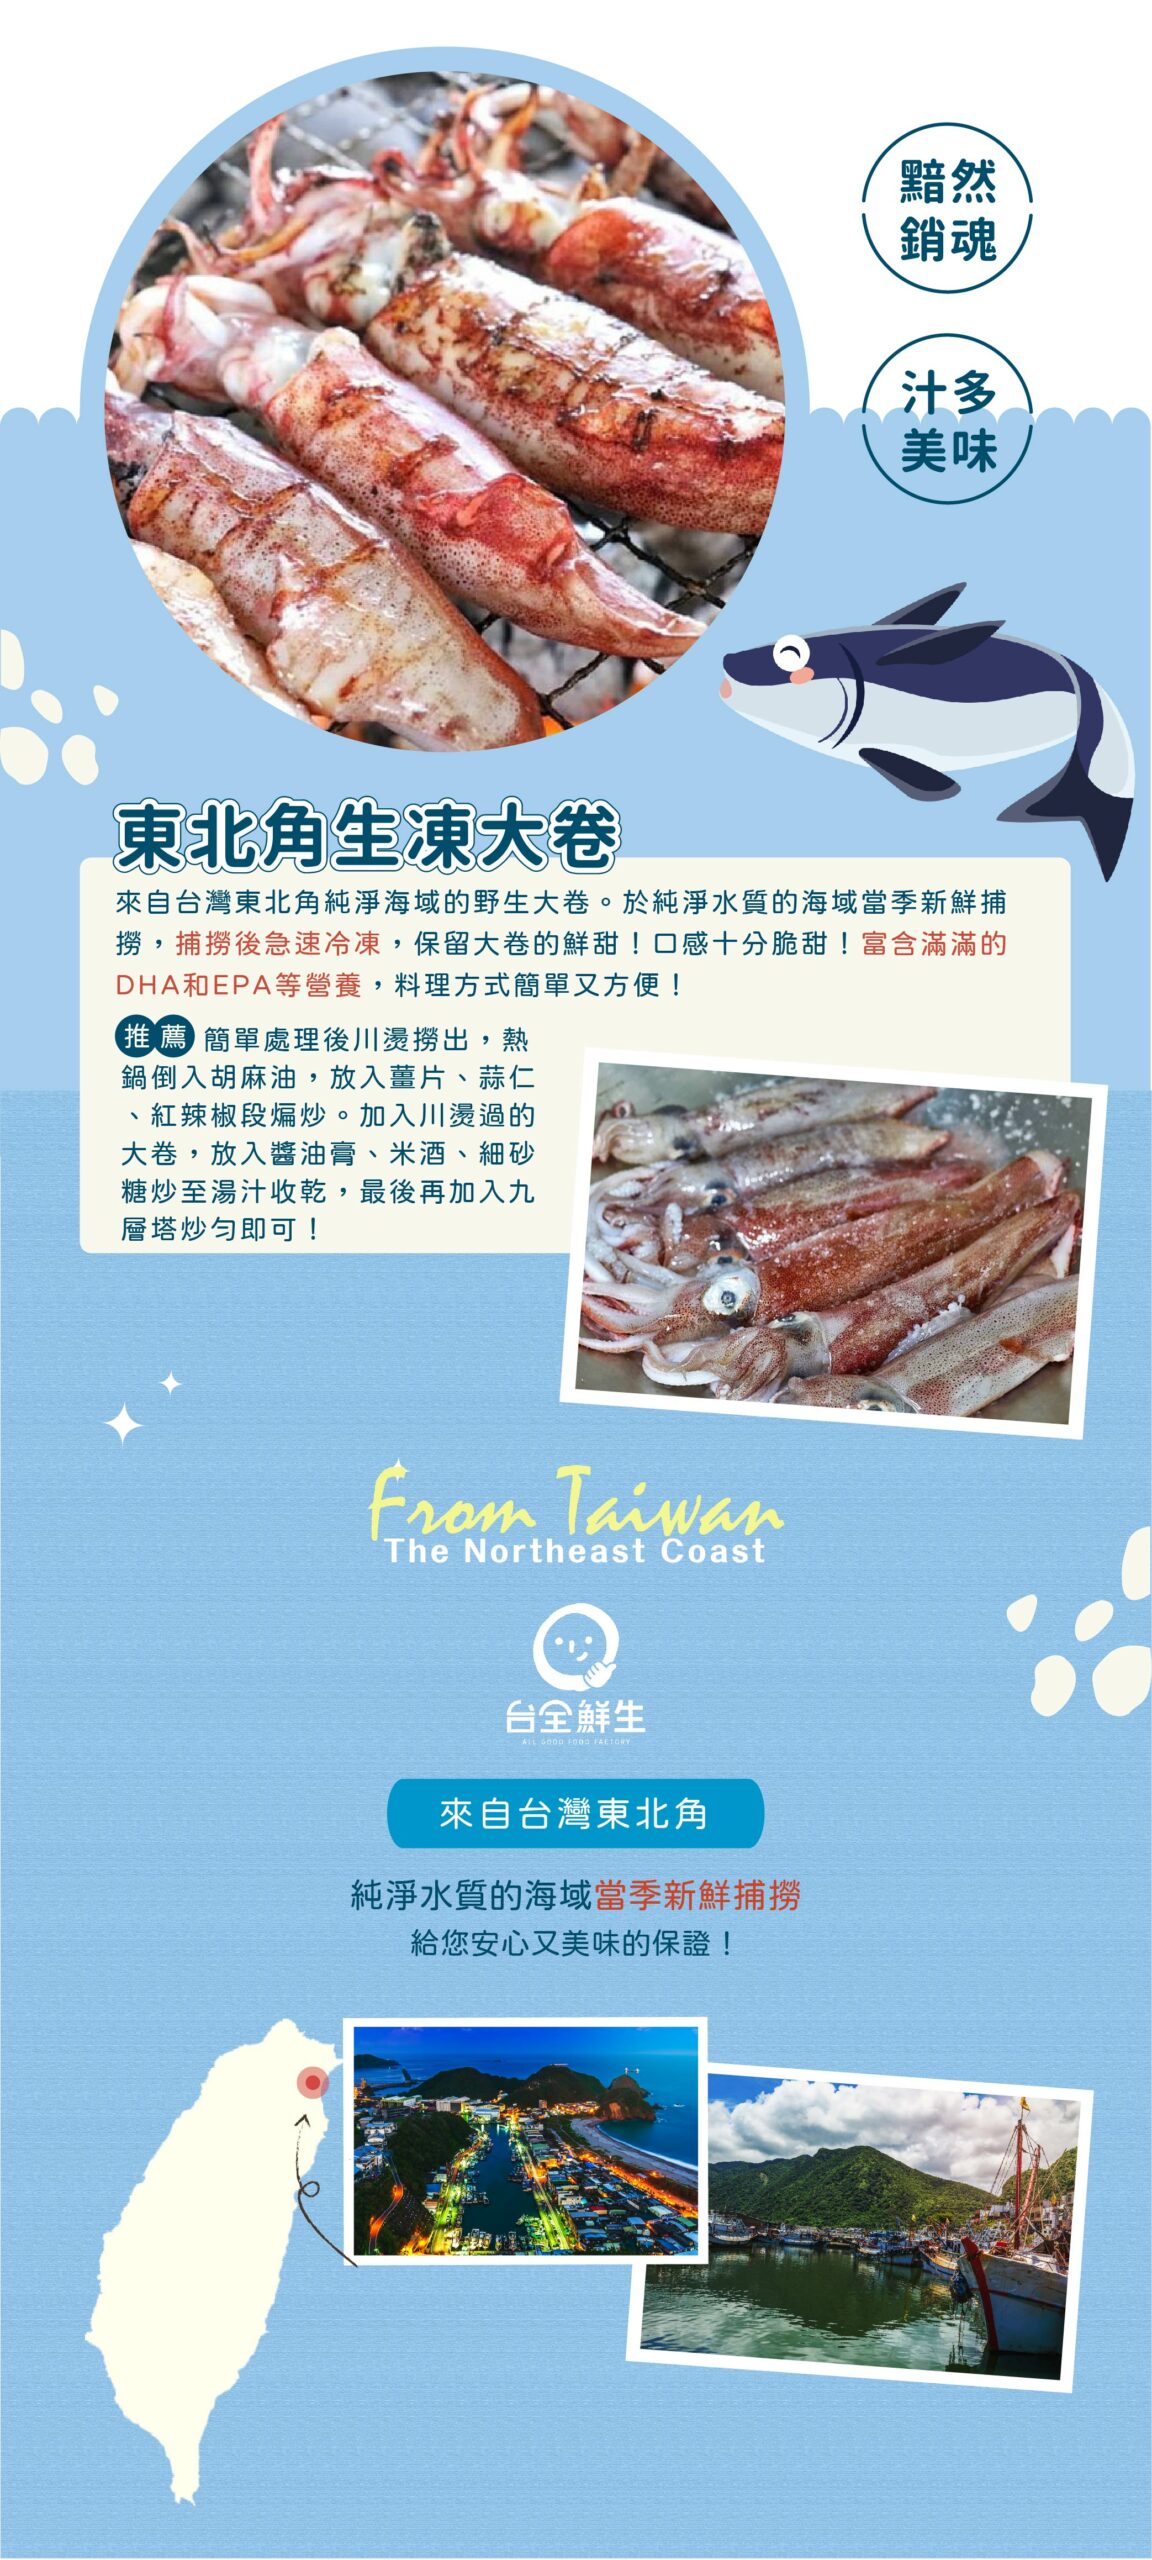 來自台灣東北角純淨海域的野生大卷